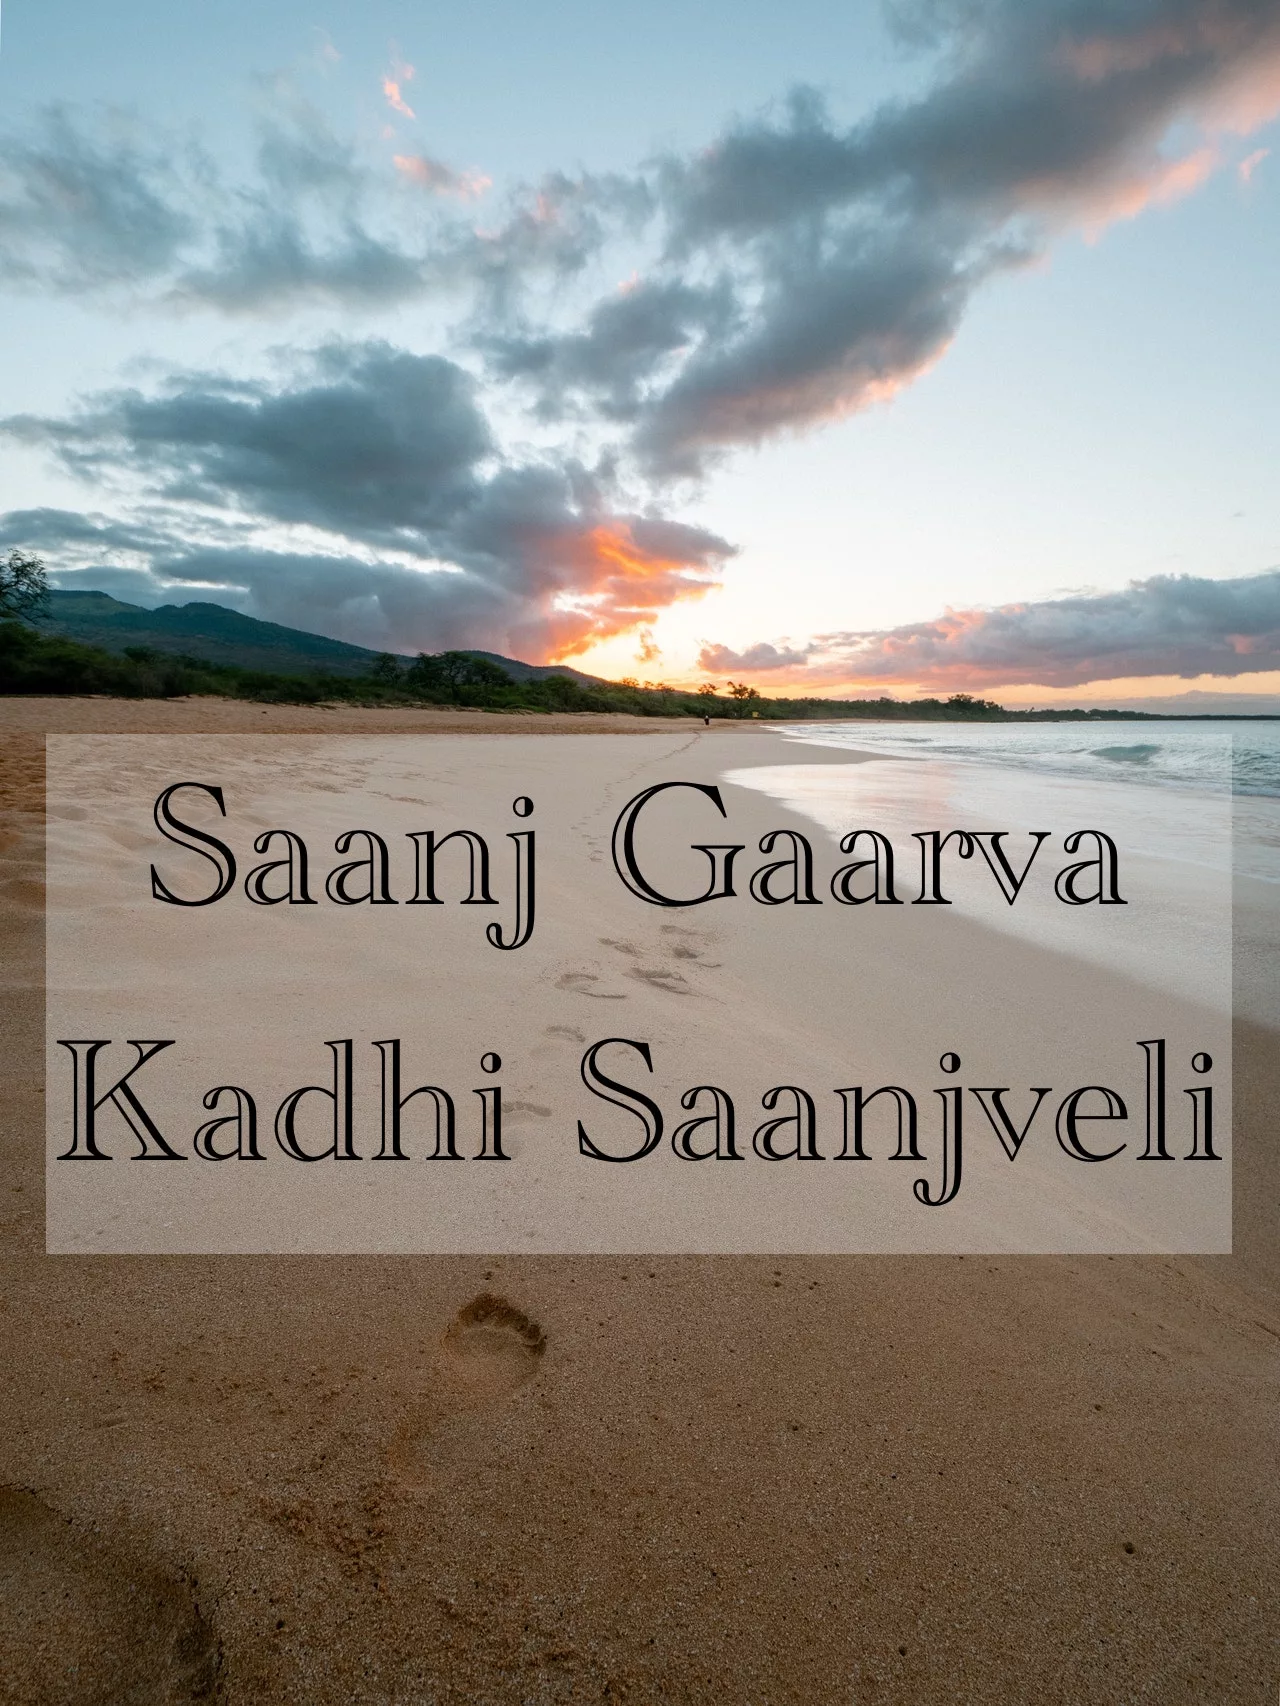 Saanj Gaarva: Kadhi Saanjveli by Milind Ingale